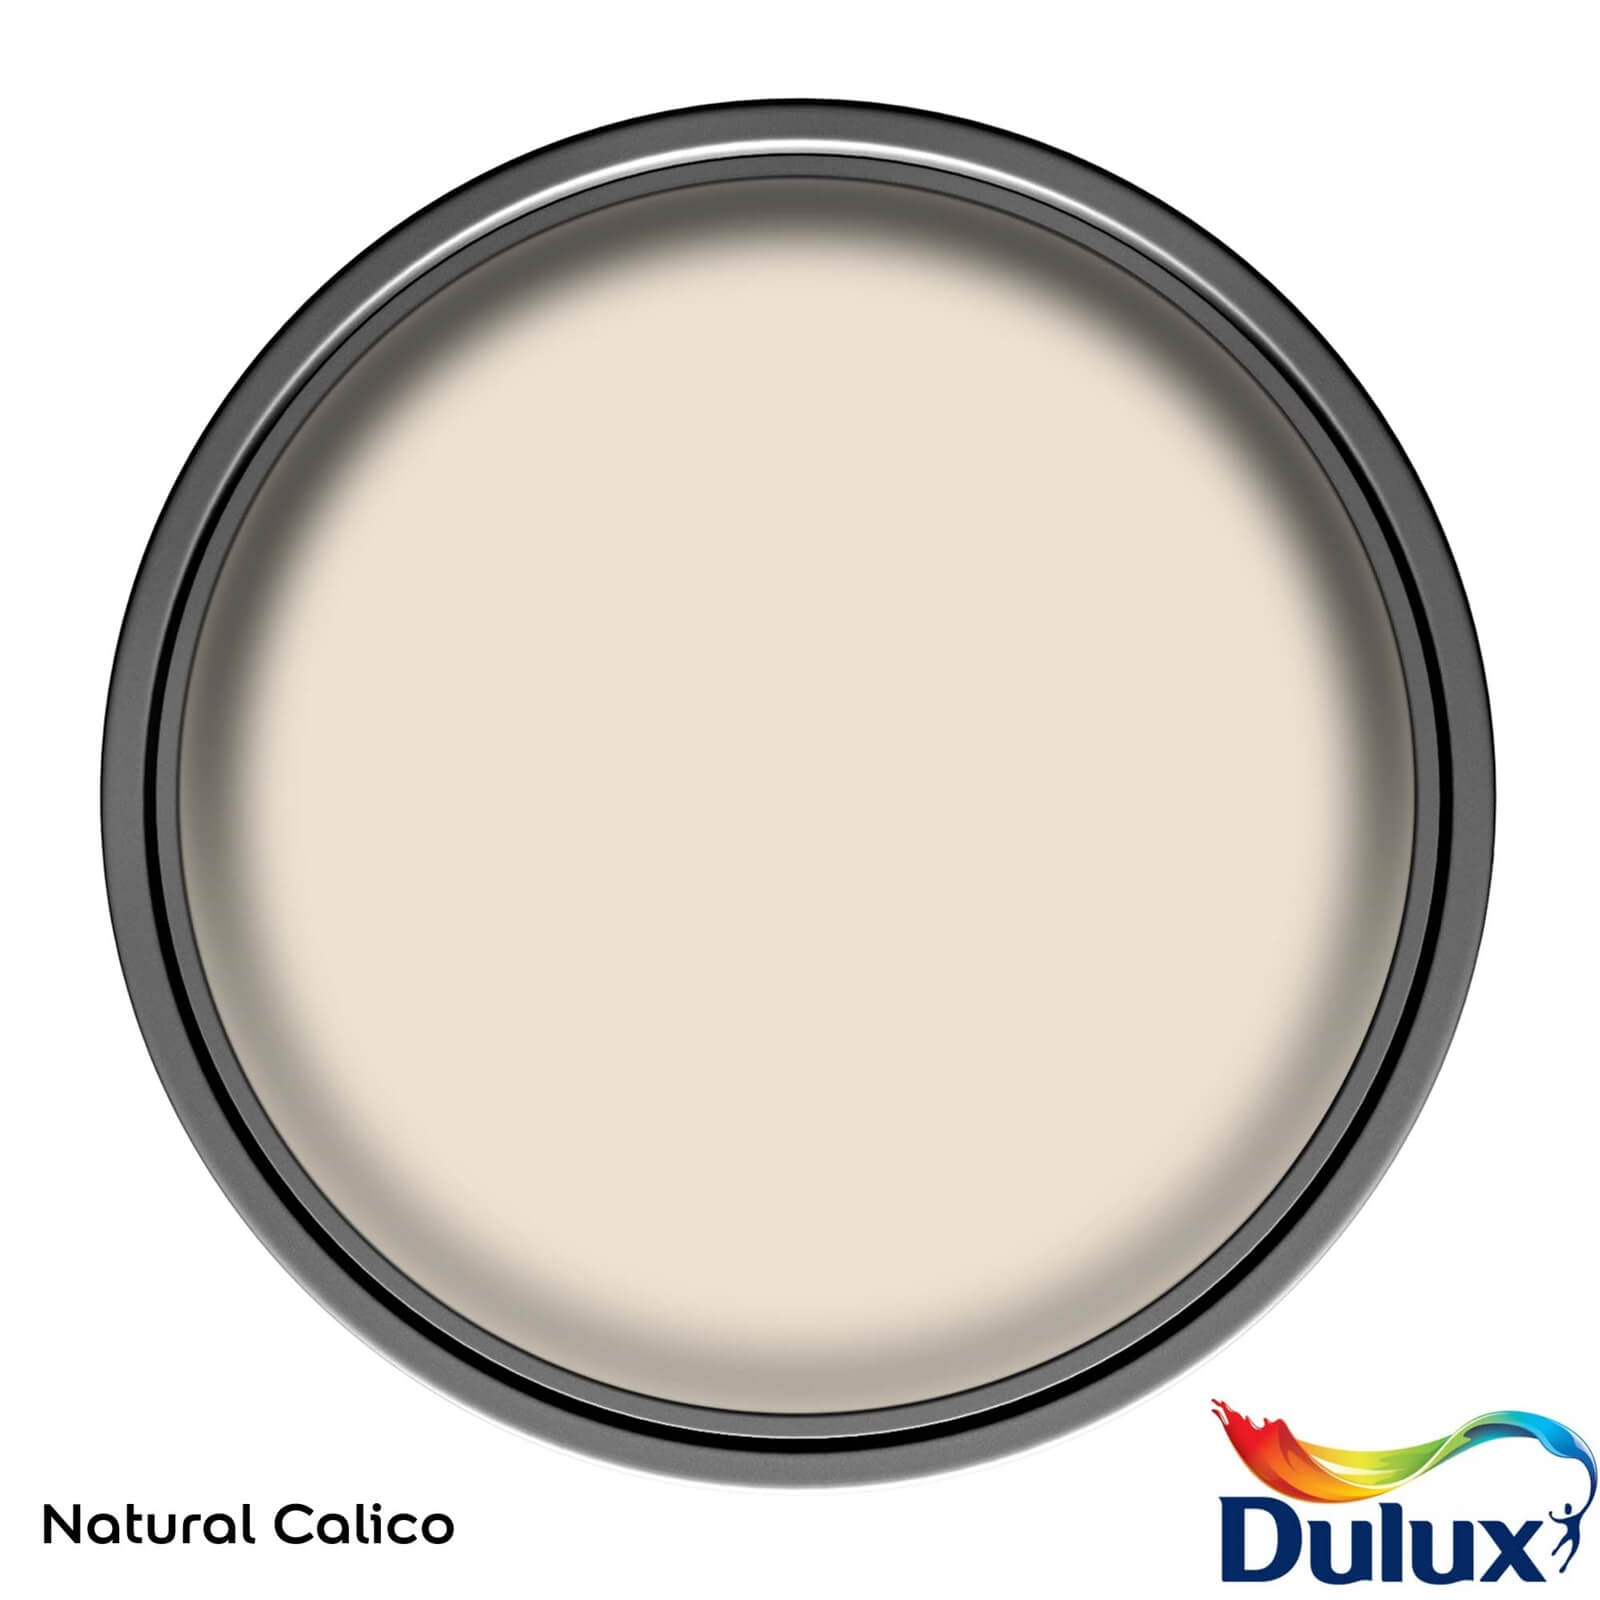 Dulux Easycare Washable & Tough Matt Paint Natural Calico - 5L